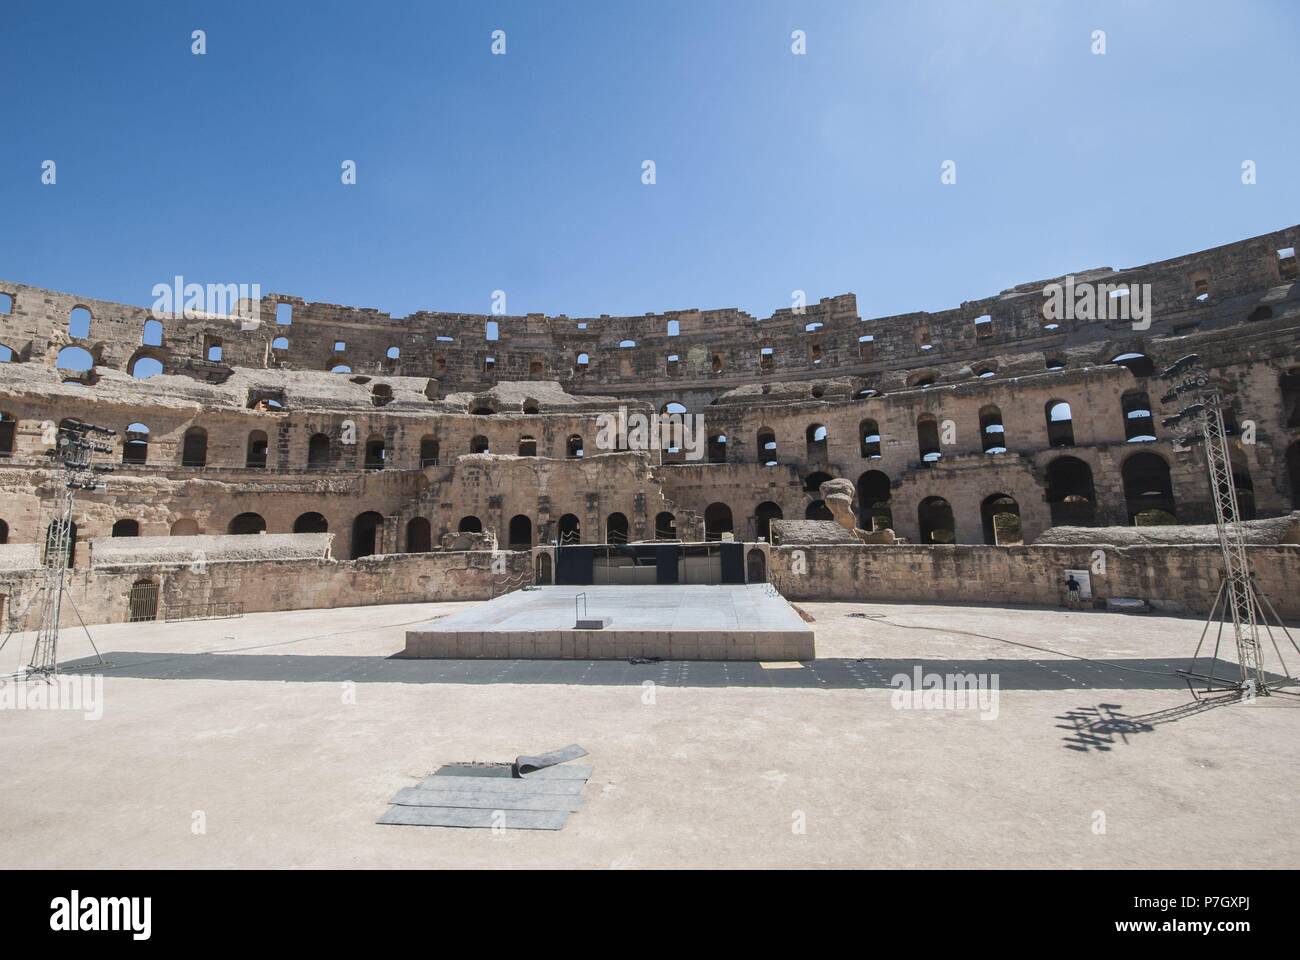 Anfitreano romano de El Djem, también conocido como coliseo de Thysdrus, Túnez. Es el anfiteatro más grande de África y el cuarto del mundo. Fue mandado construir por el procónsul Gordiano en el 238 d.C bajo el reinado del emperador Maximino el Tracio. Stock Photo